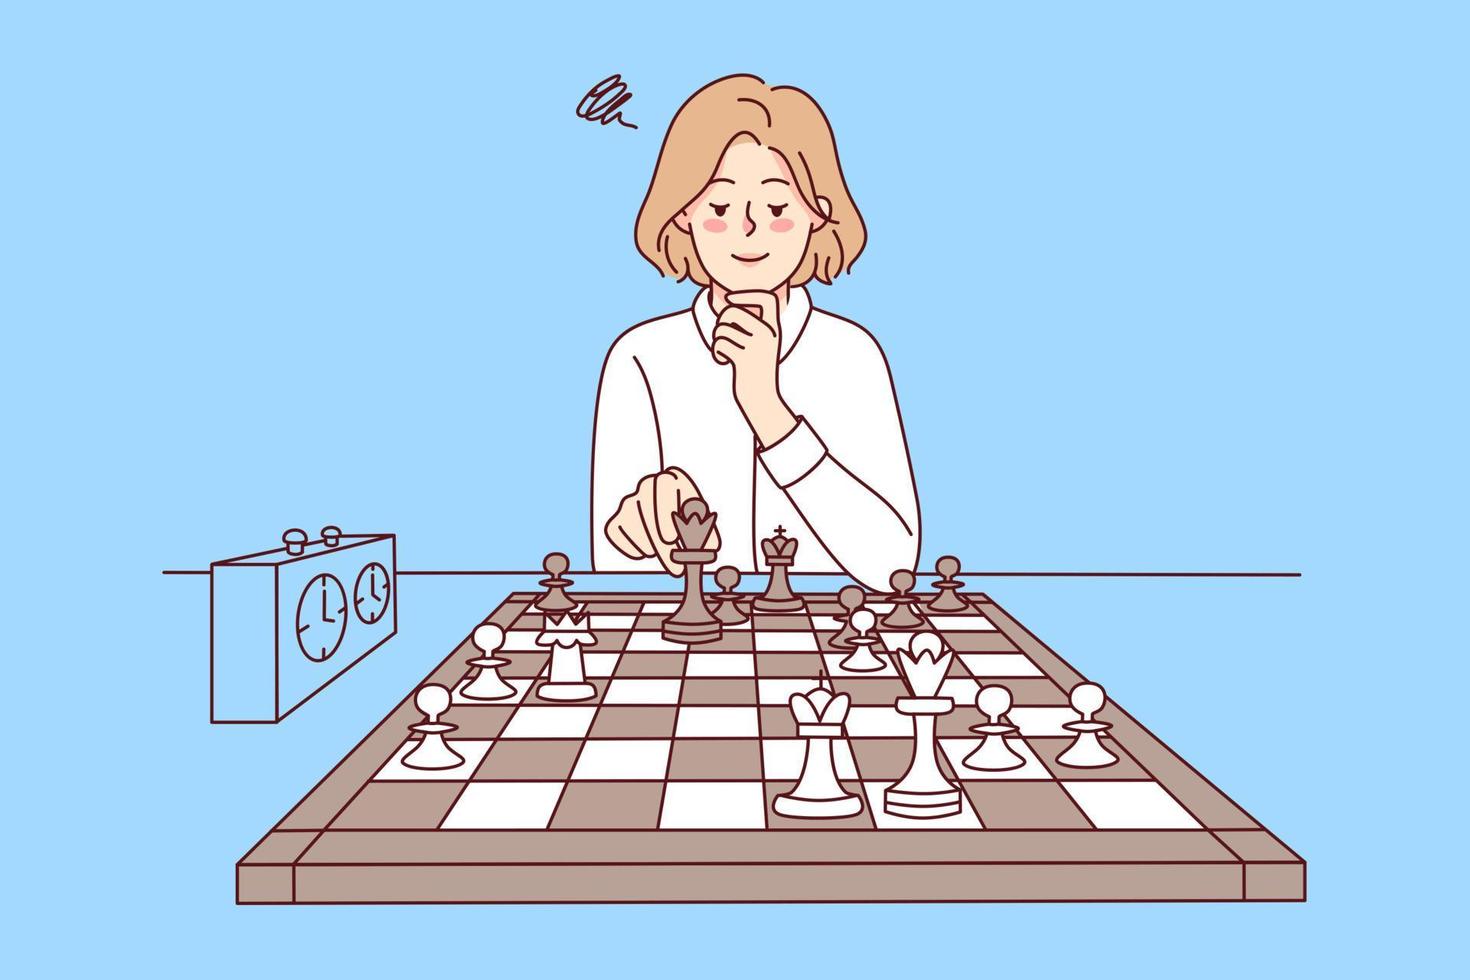 Modelo de página inicial de tutorial de xadrez online. personagens jogando  xadrez. homem pensando no enorme tabuleiro de xadrez com figuras, diversão  de tempo livre, jogo de lógica, recreação. ilustração em vetor